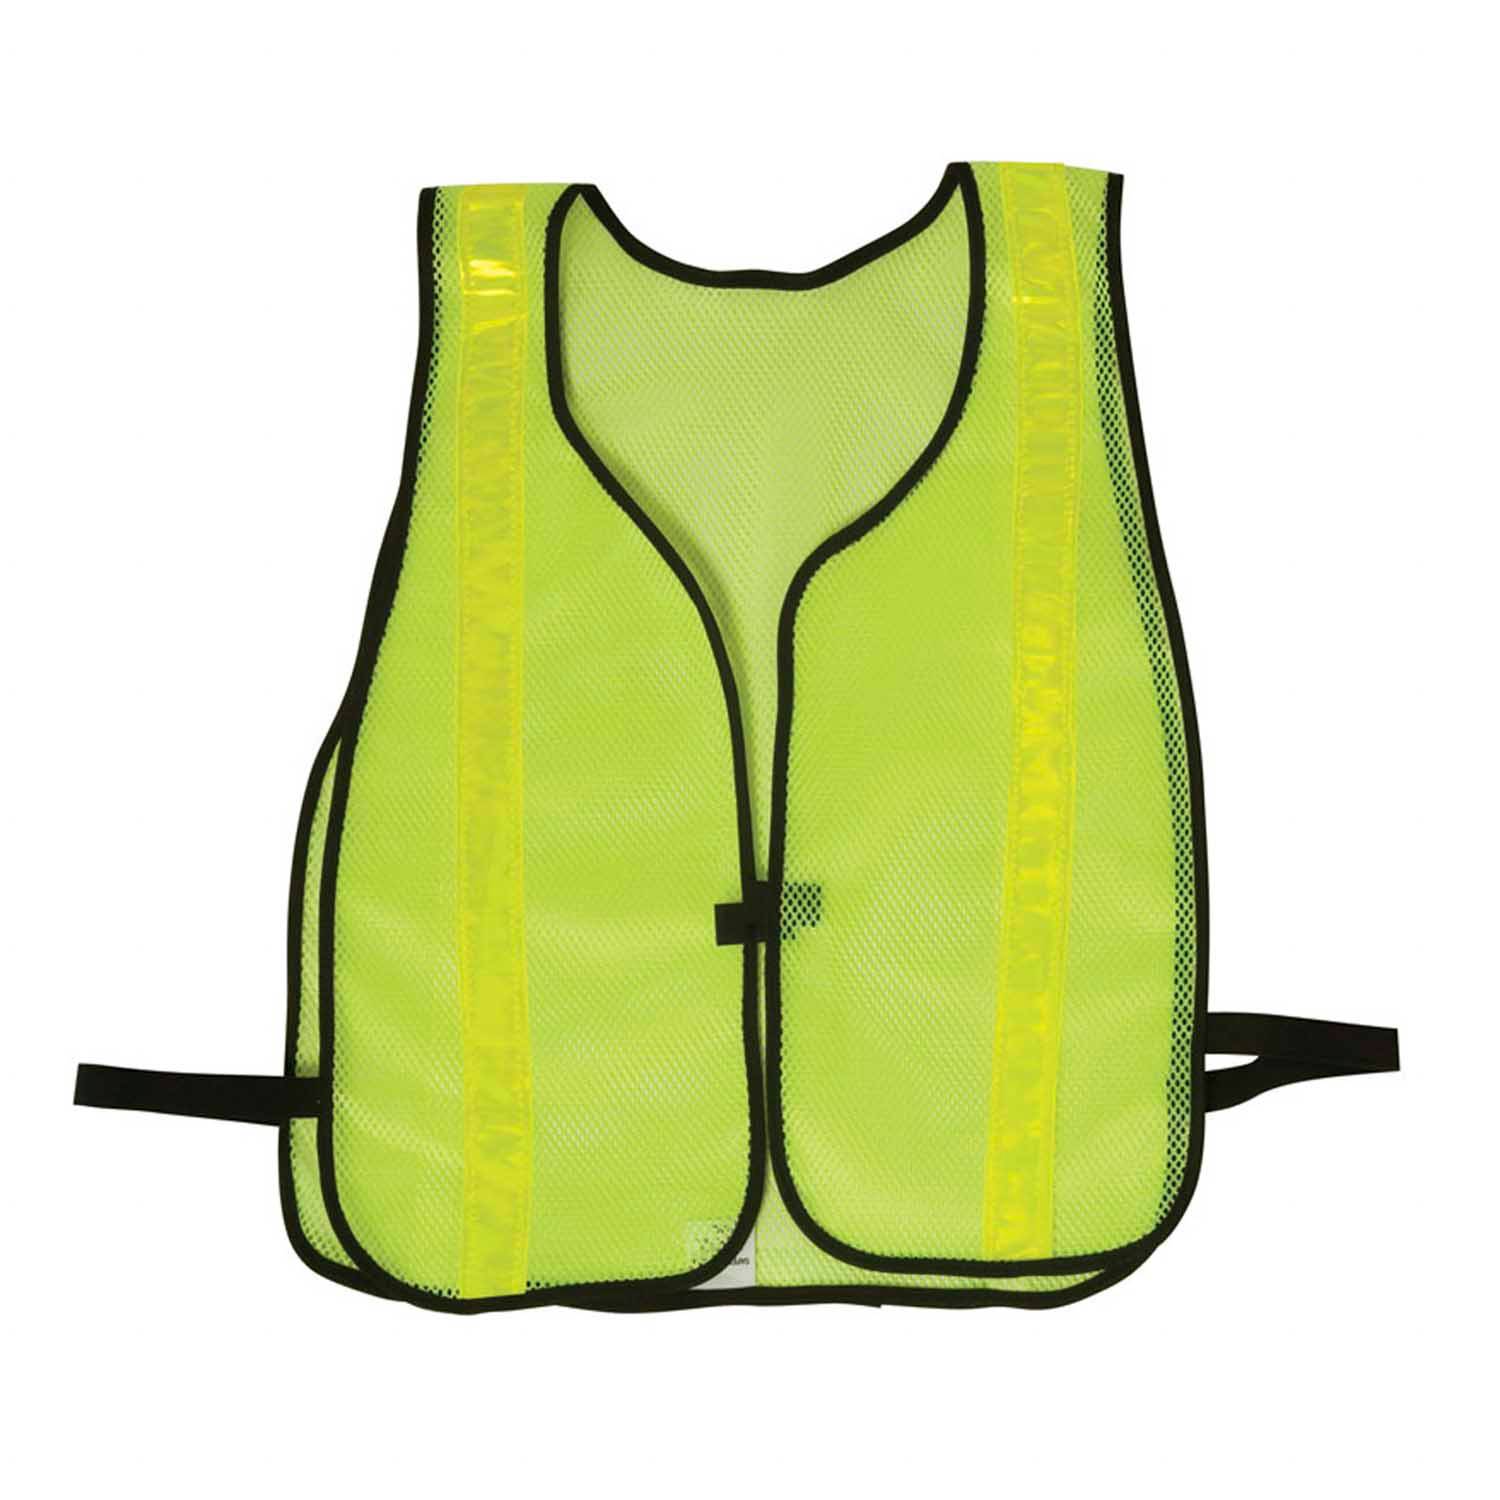 Safety Flag Hi-Vis Lime Green Reflective Vest